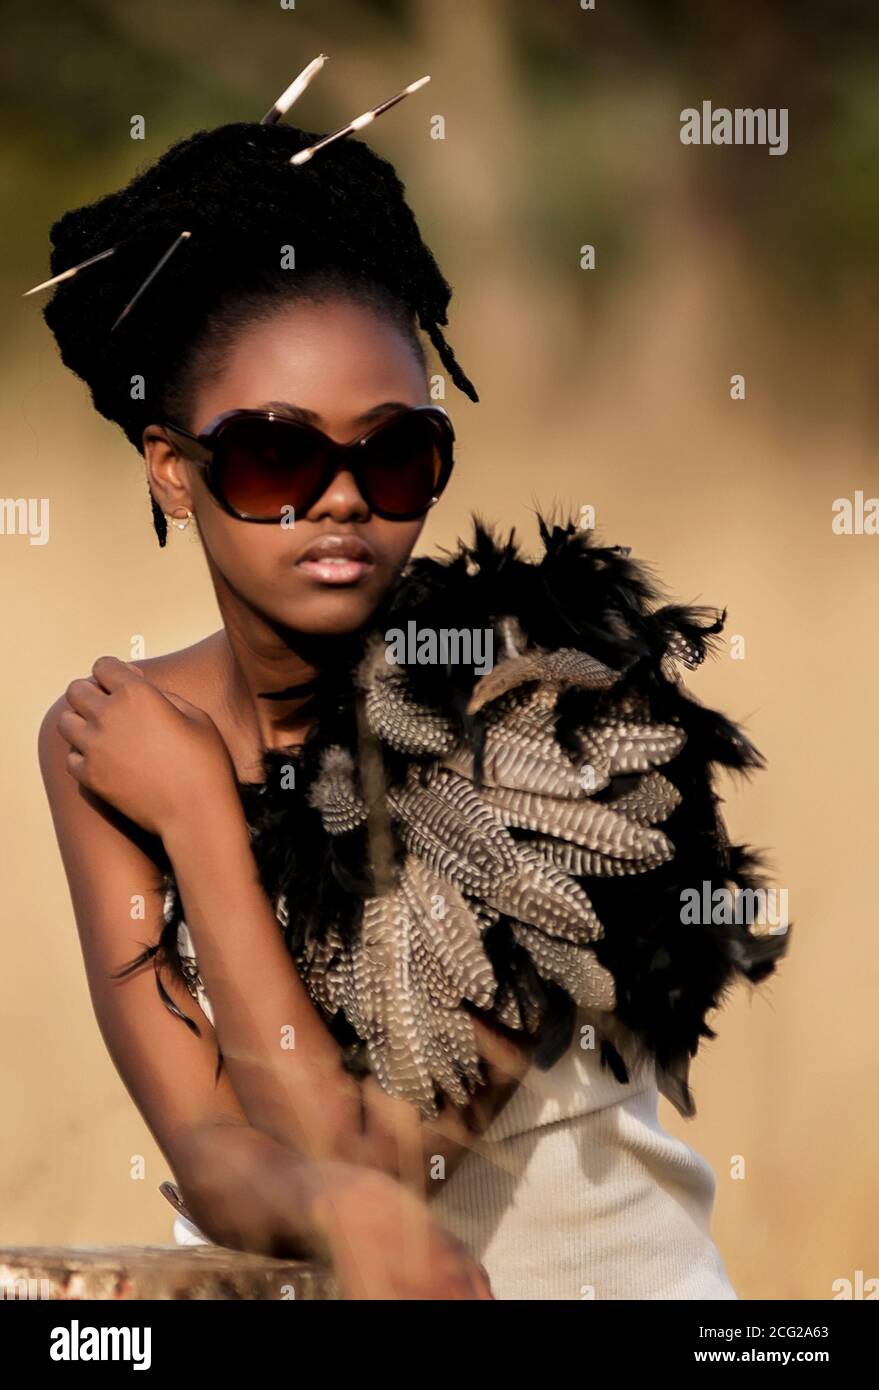 modèle réussi de femme noire en safari africain avec des lunettes de soleil Banque D'Images